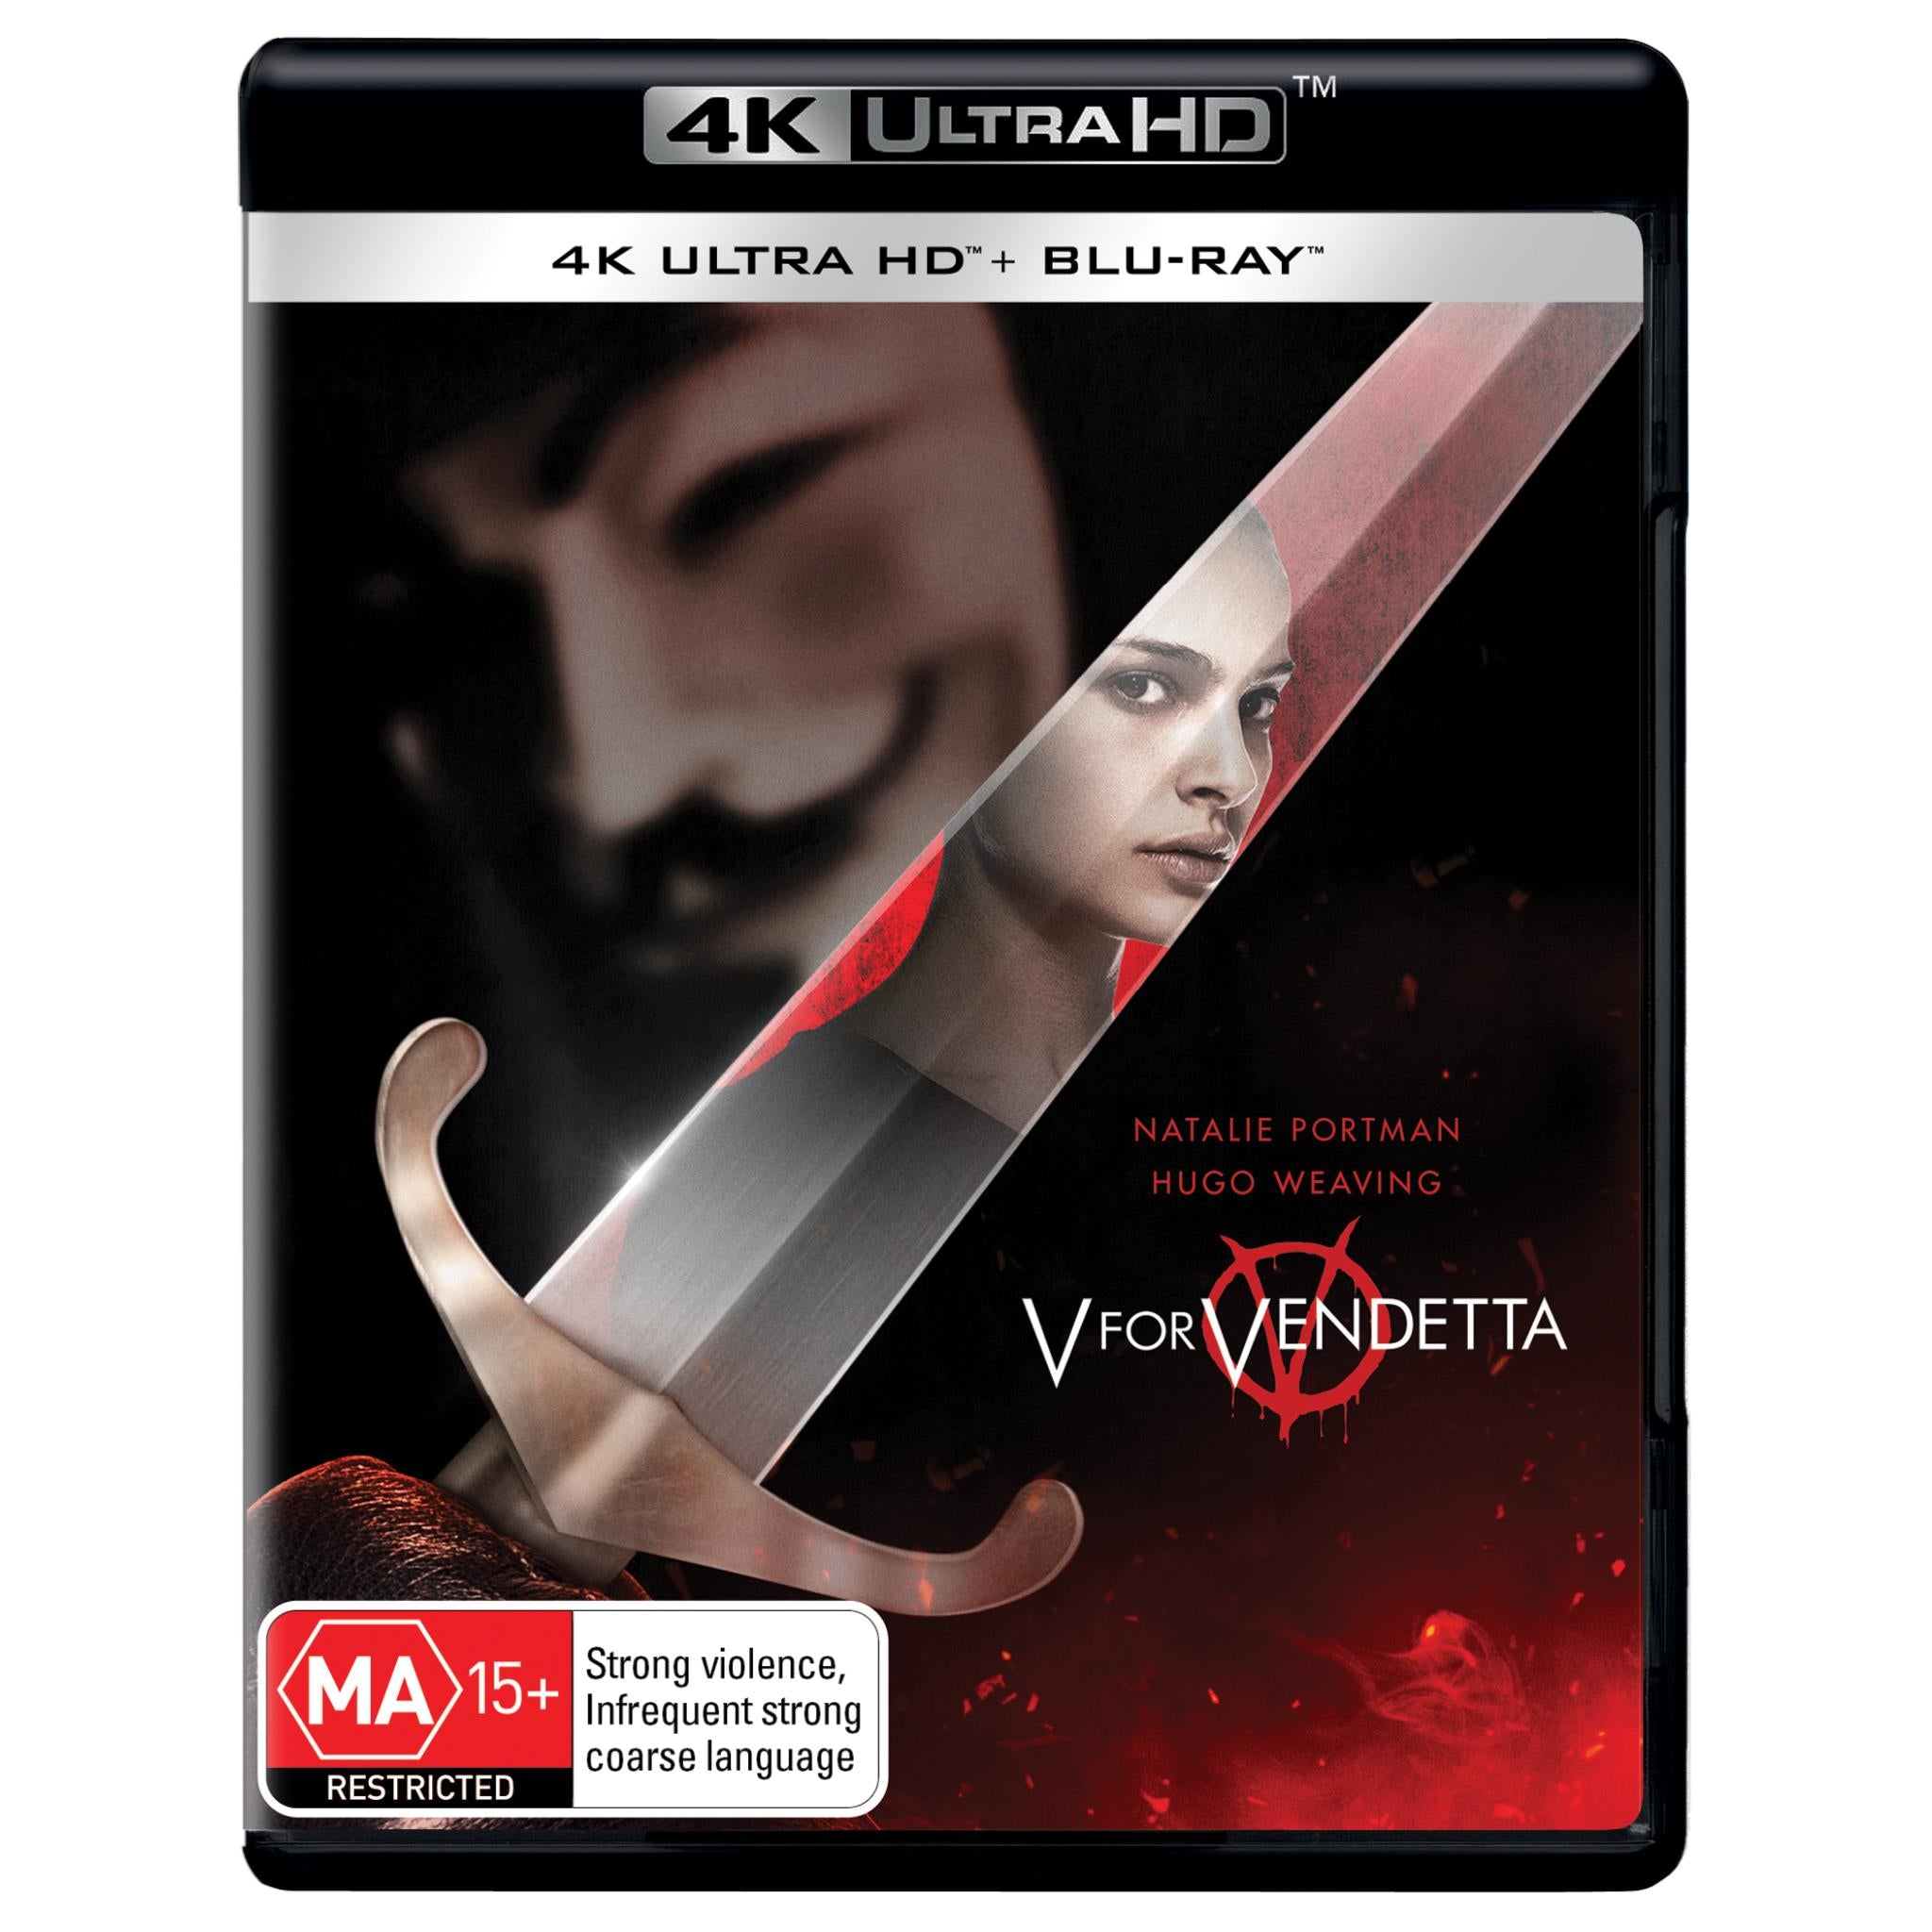 DVD V De Vingança Natalie Portman Hugo Weaving Original V For